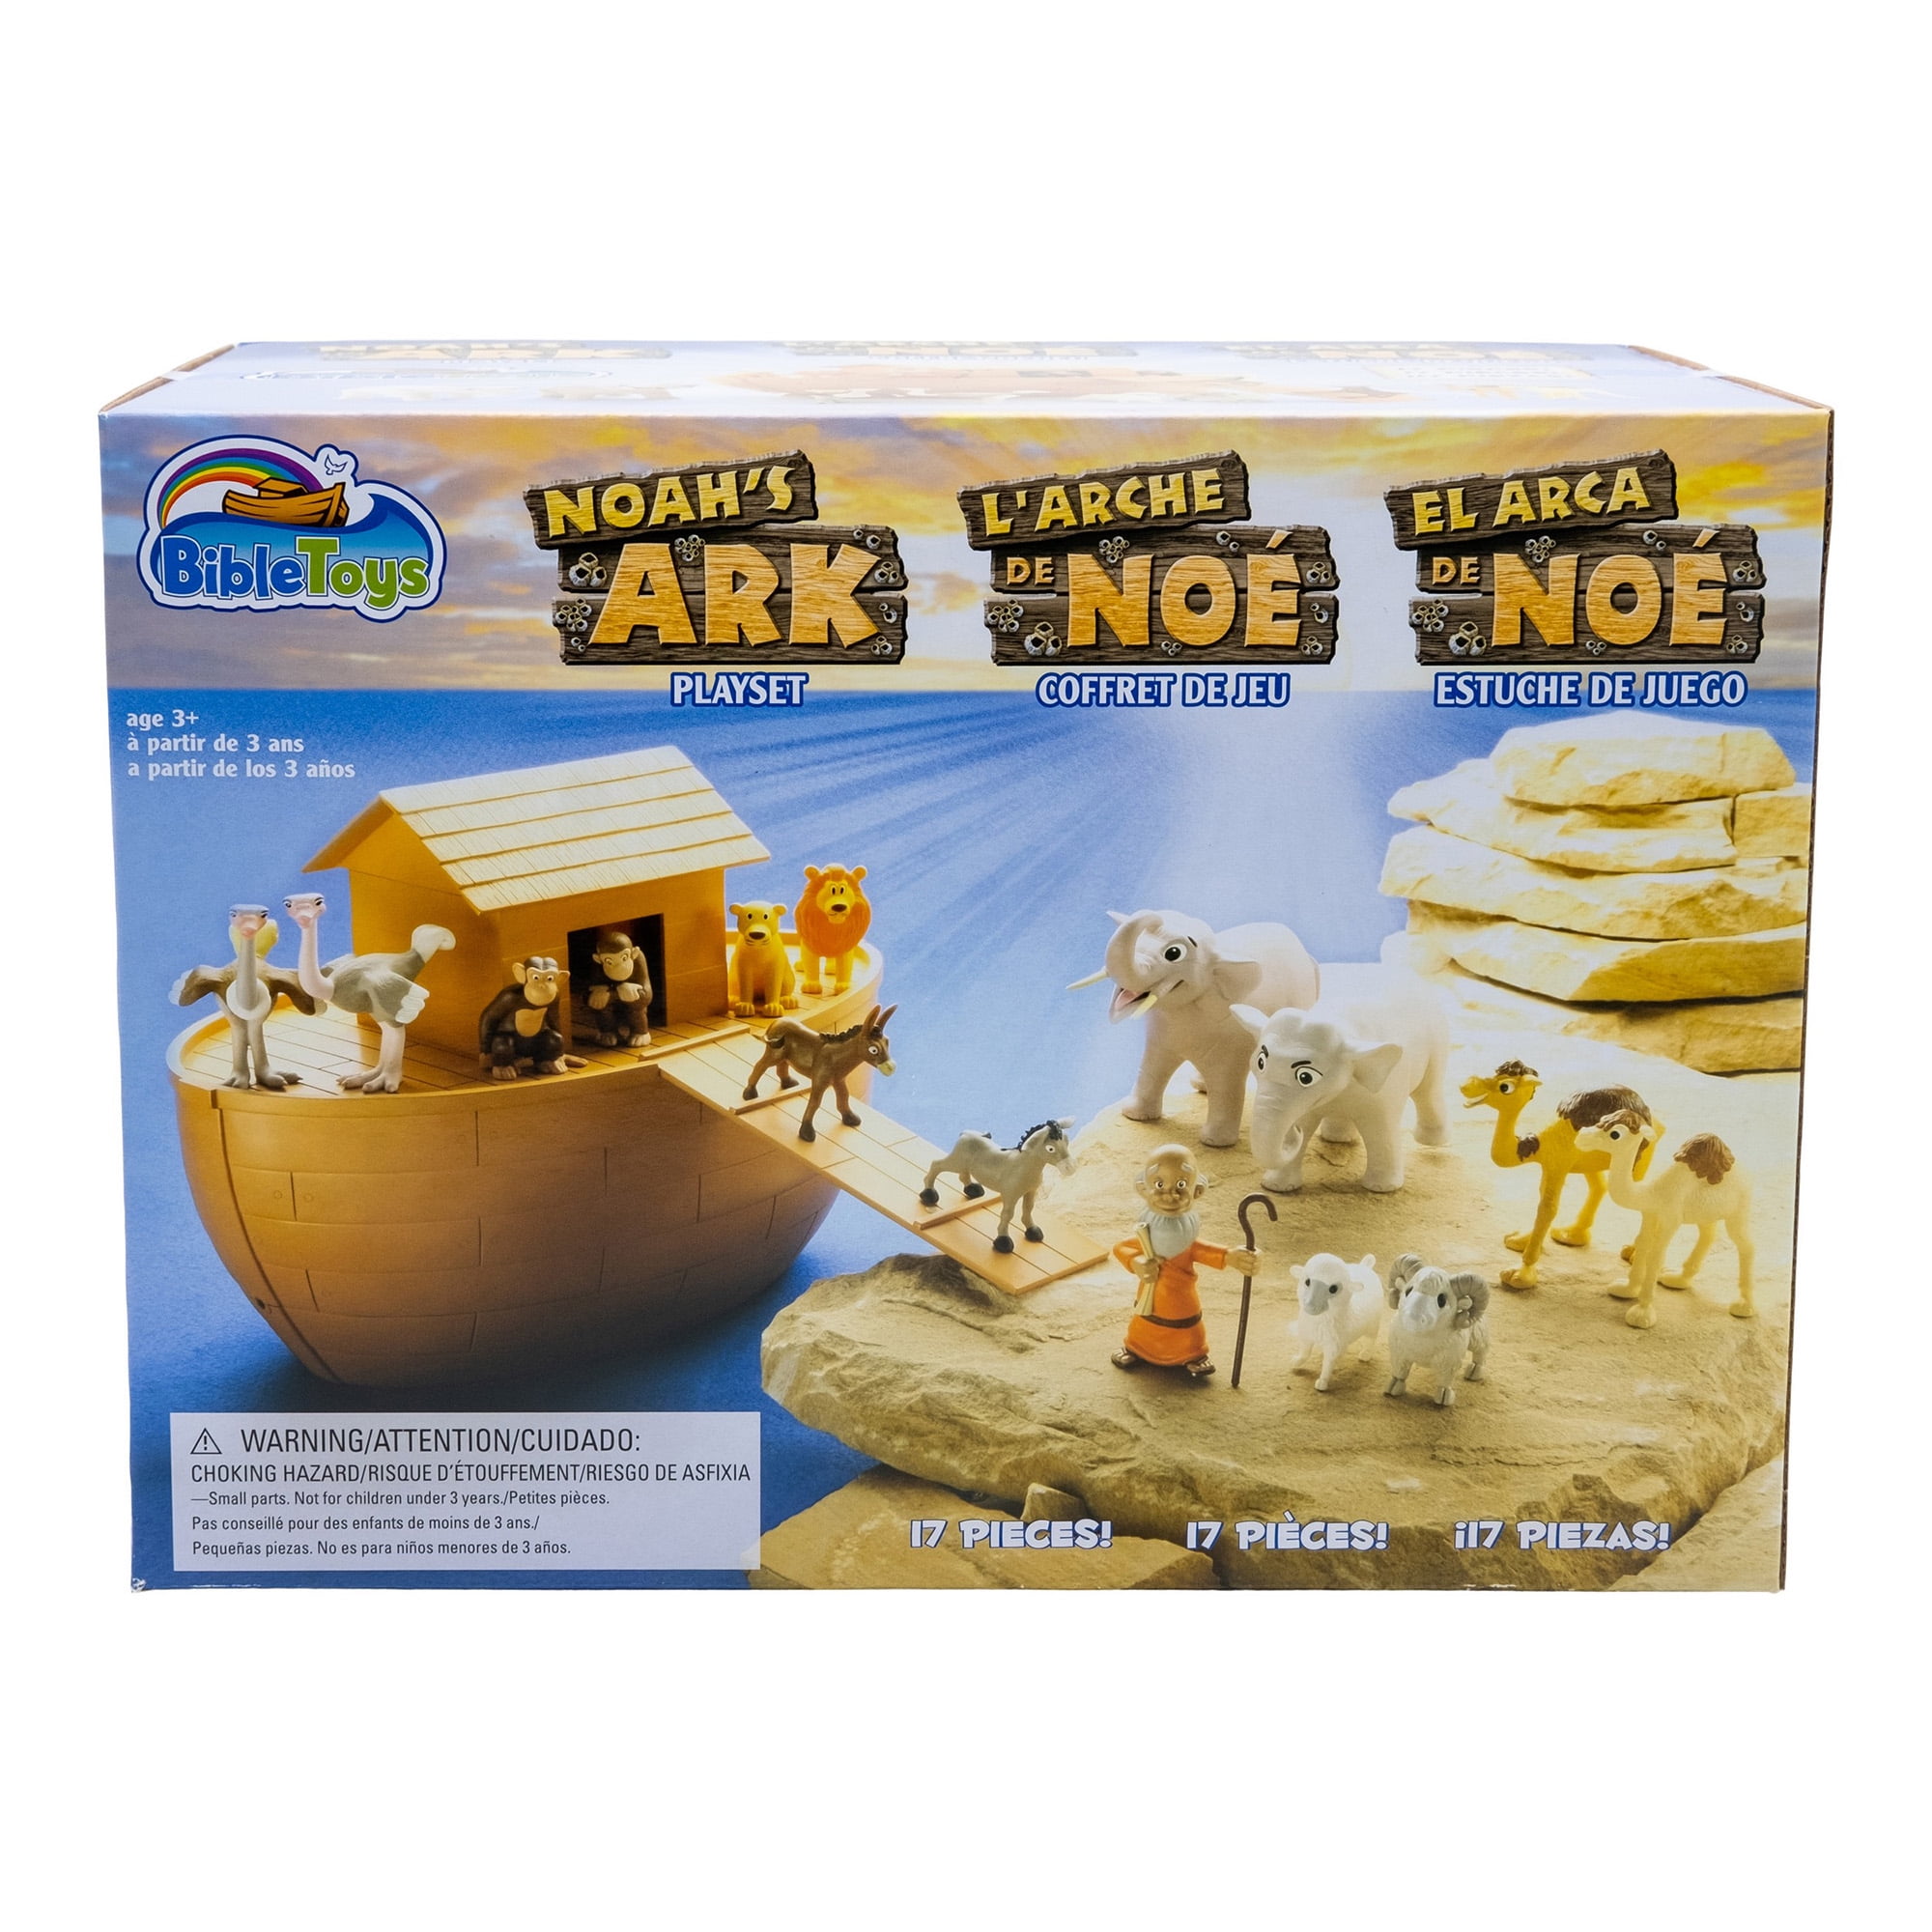 noah's ark plastic toy